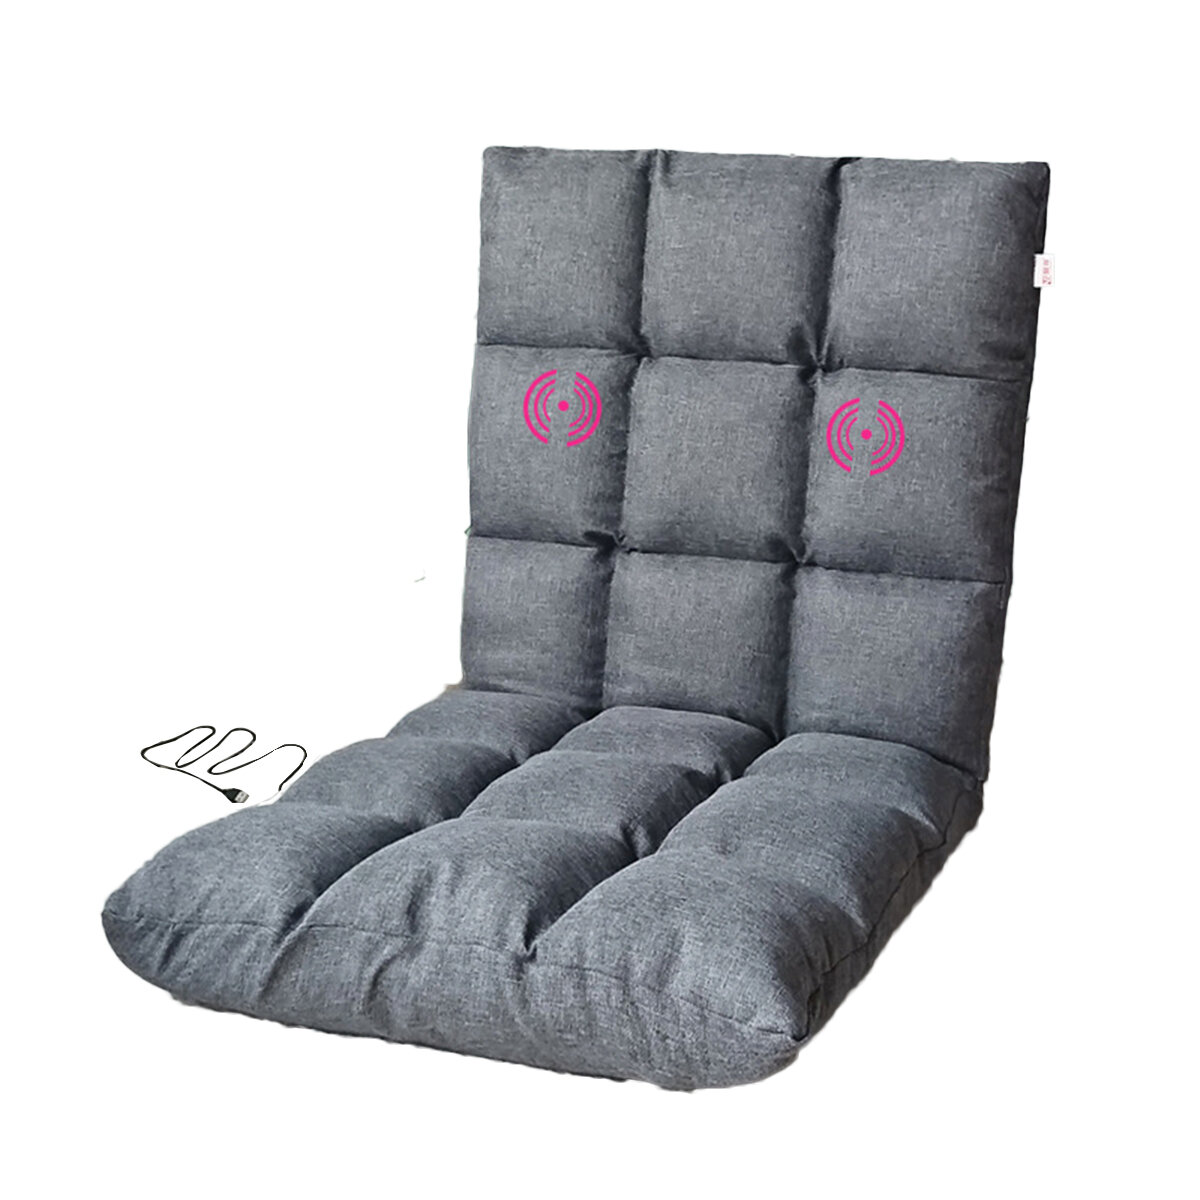 USB القوة توريد كرسي أرضي قابل للطي أريكة استرخاء قابلة للتعديل أريكة Soft كرسي مع الظهر الدعم لغرفة المعيشة المنزلية